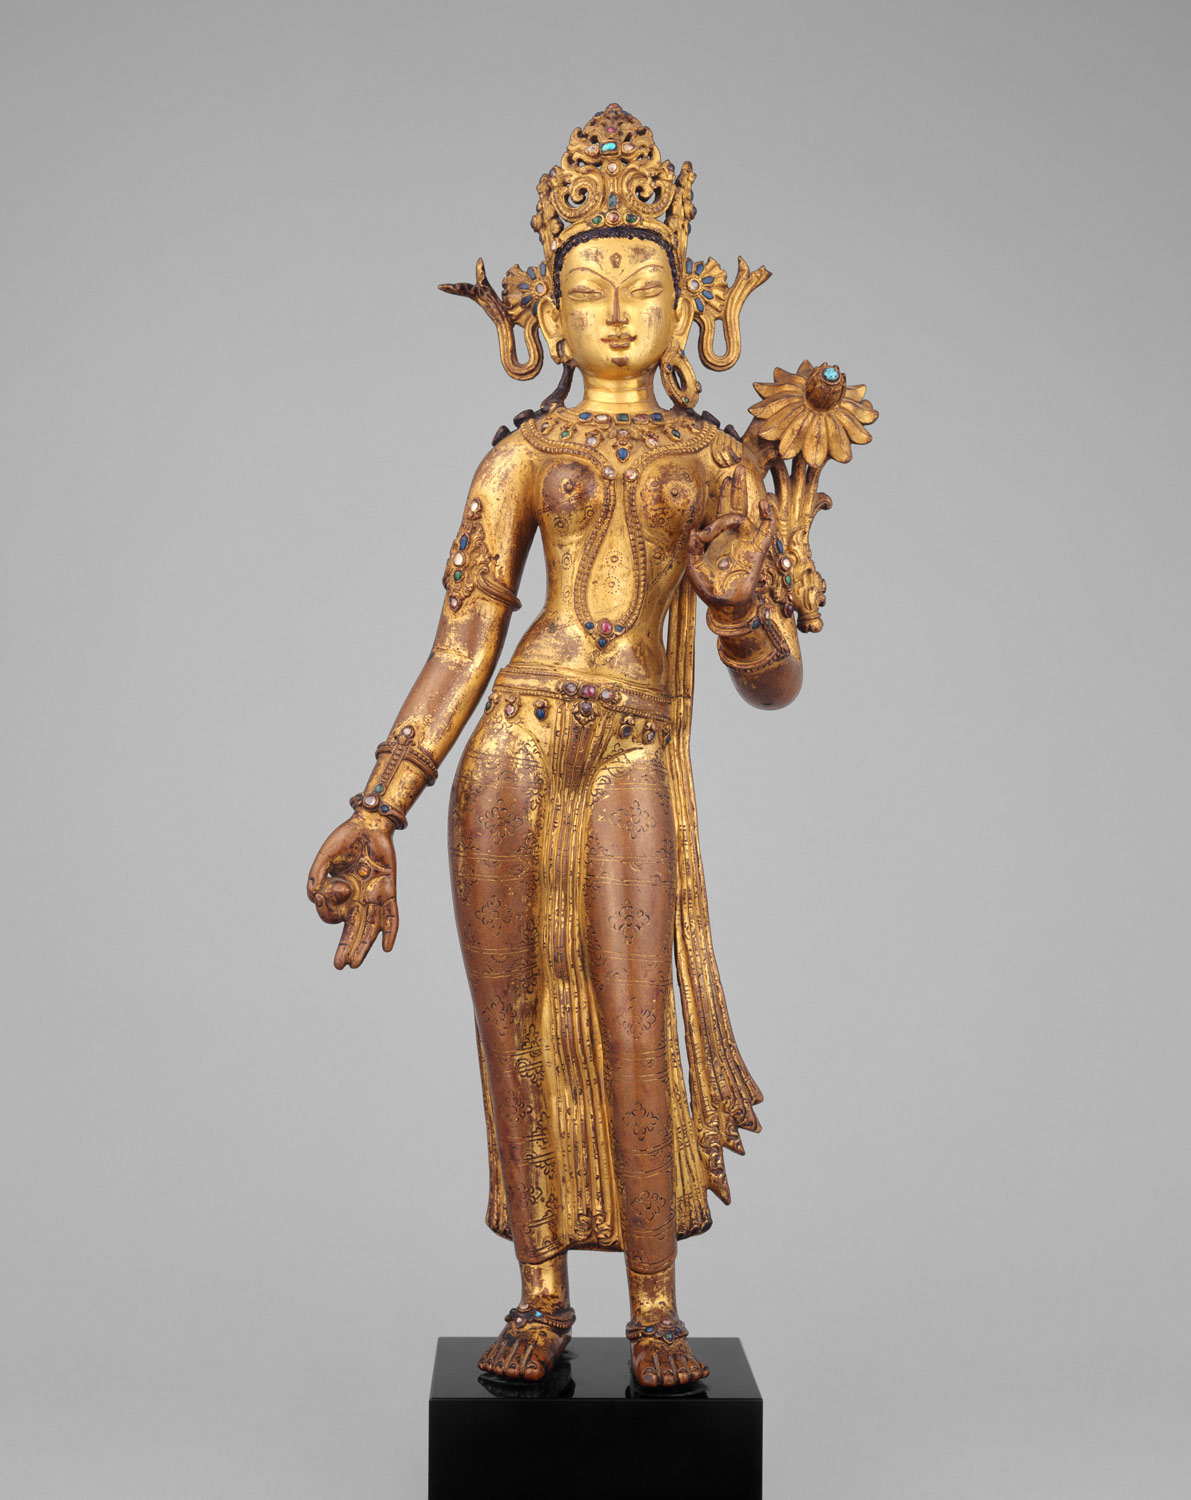 Tara, the Buddhist Savior